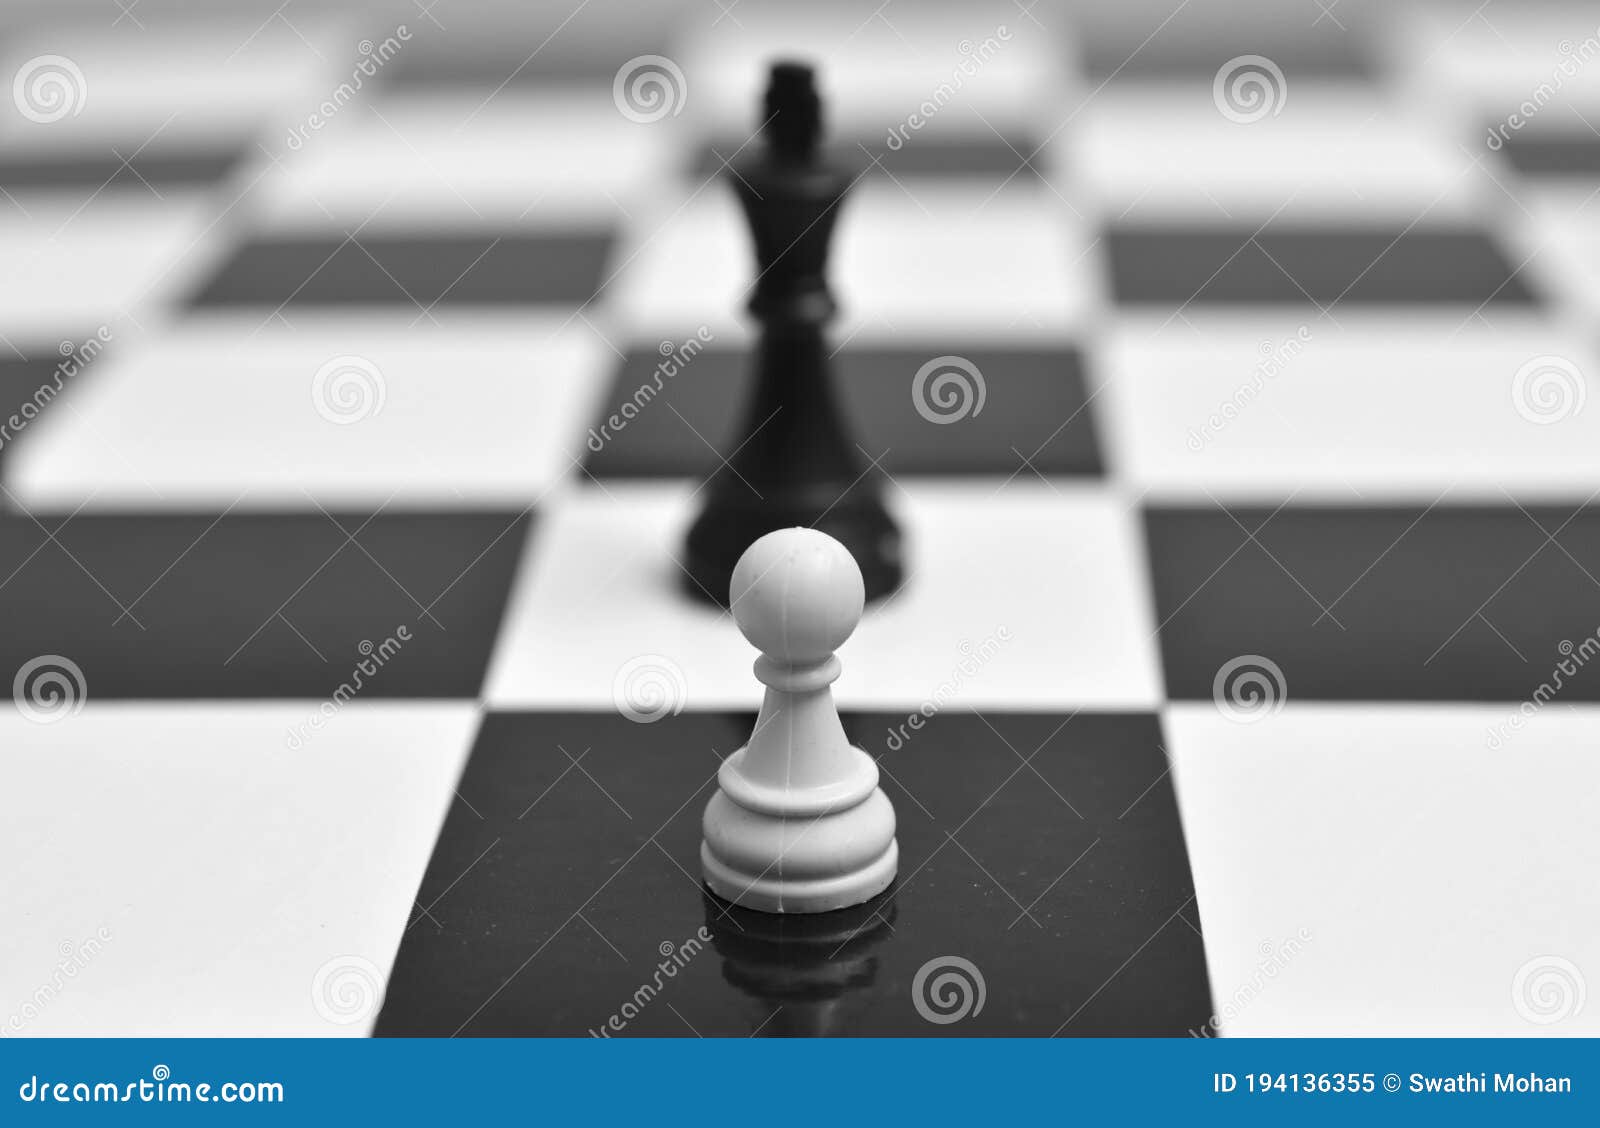 Um peão preto e um peão branco no tabuleiro de xadrez